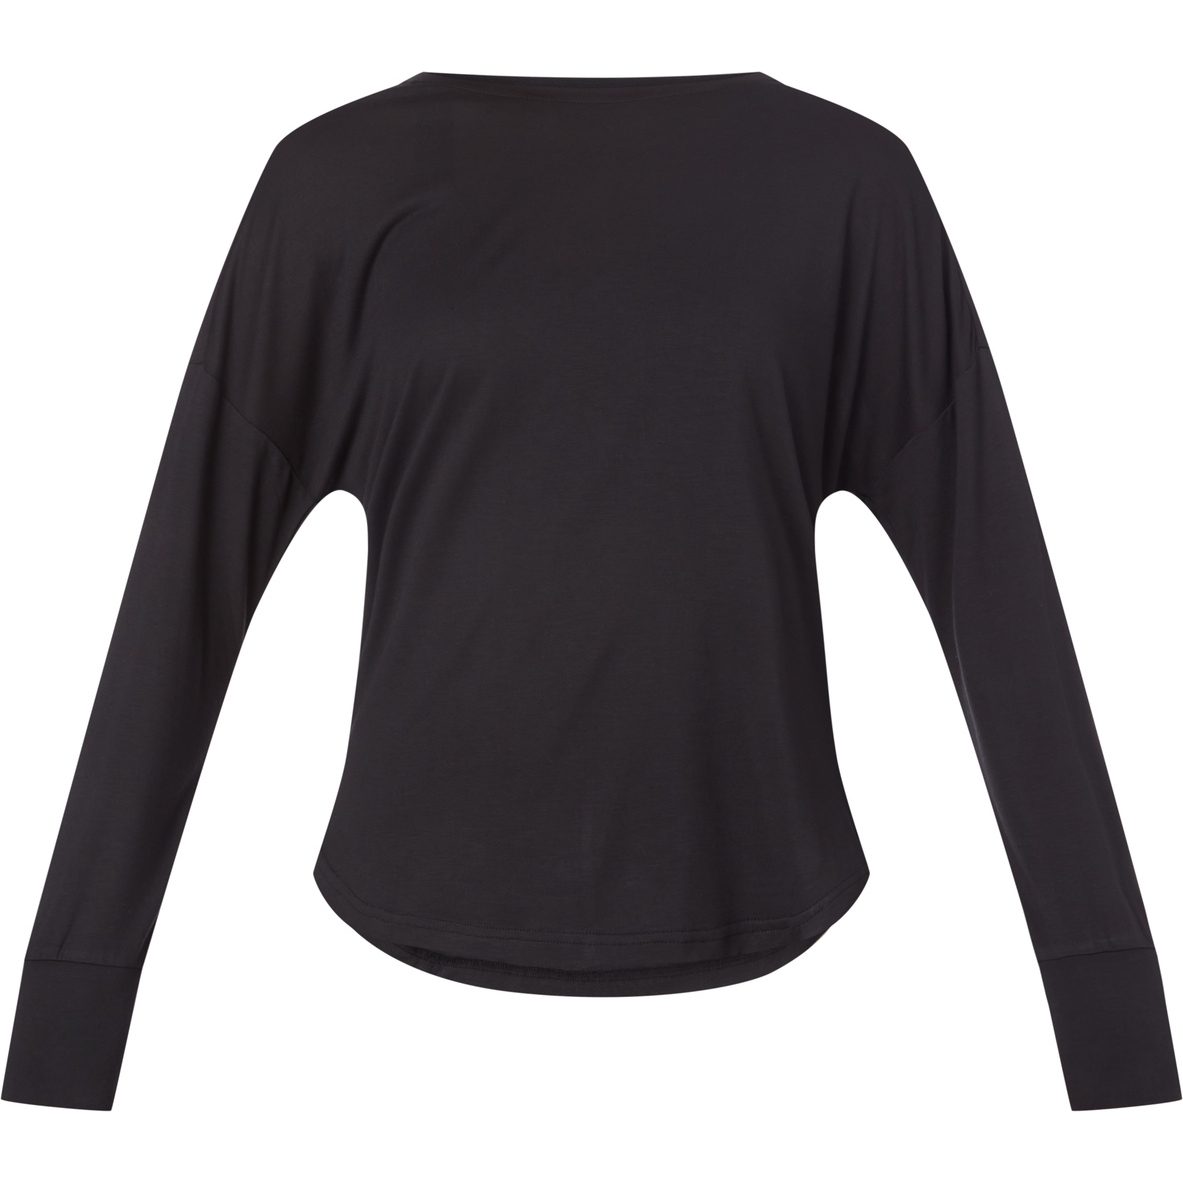 Productfoto van ENERGETICS Omarly 3 Women&#039;s Longsleeve Shirt - black